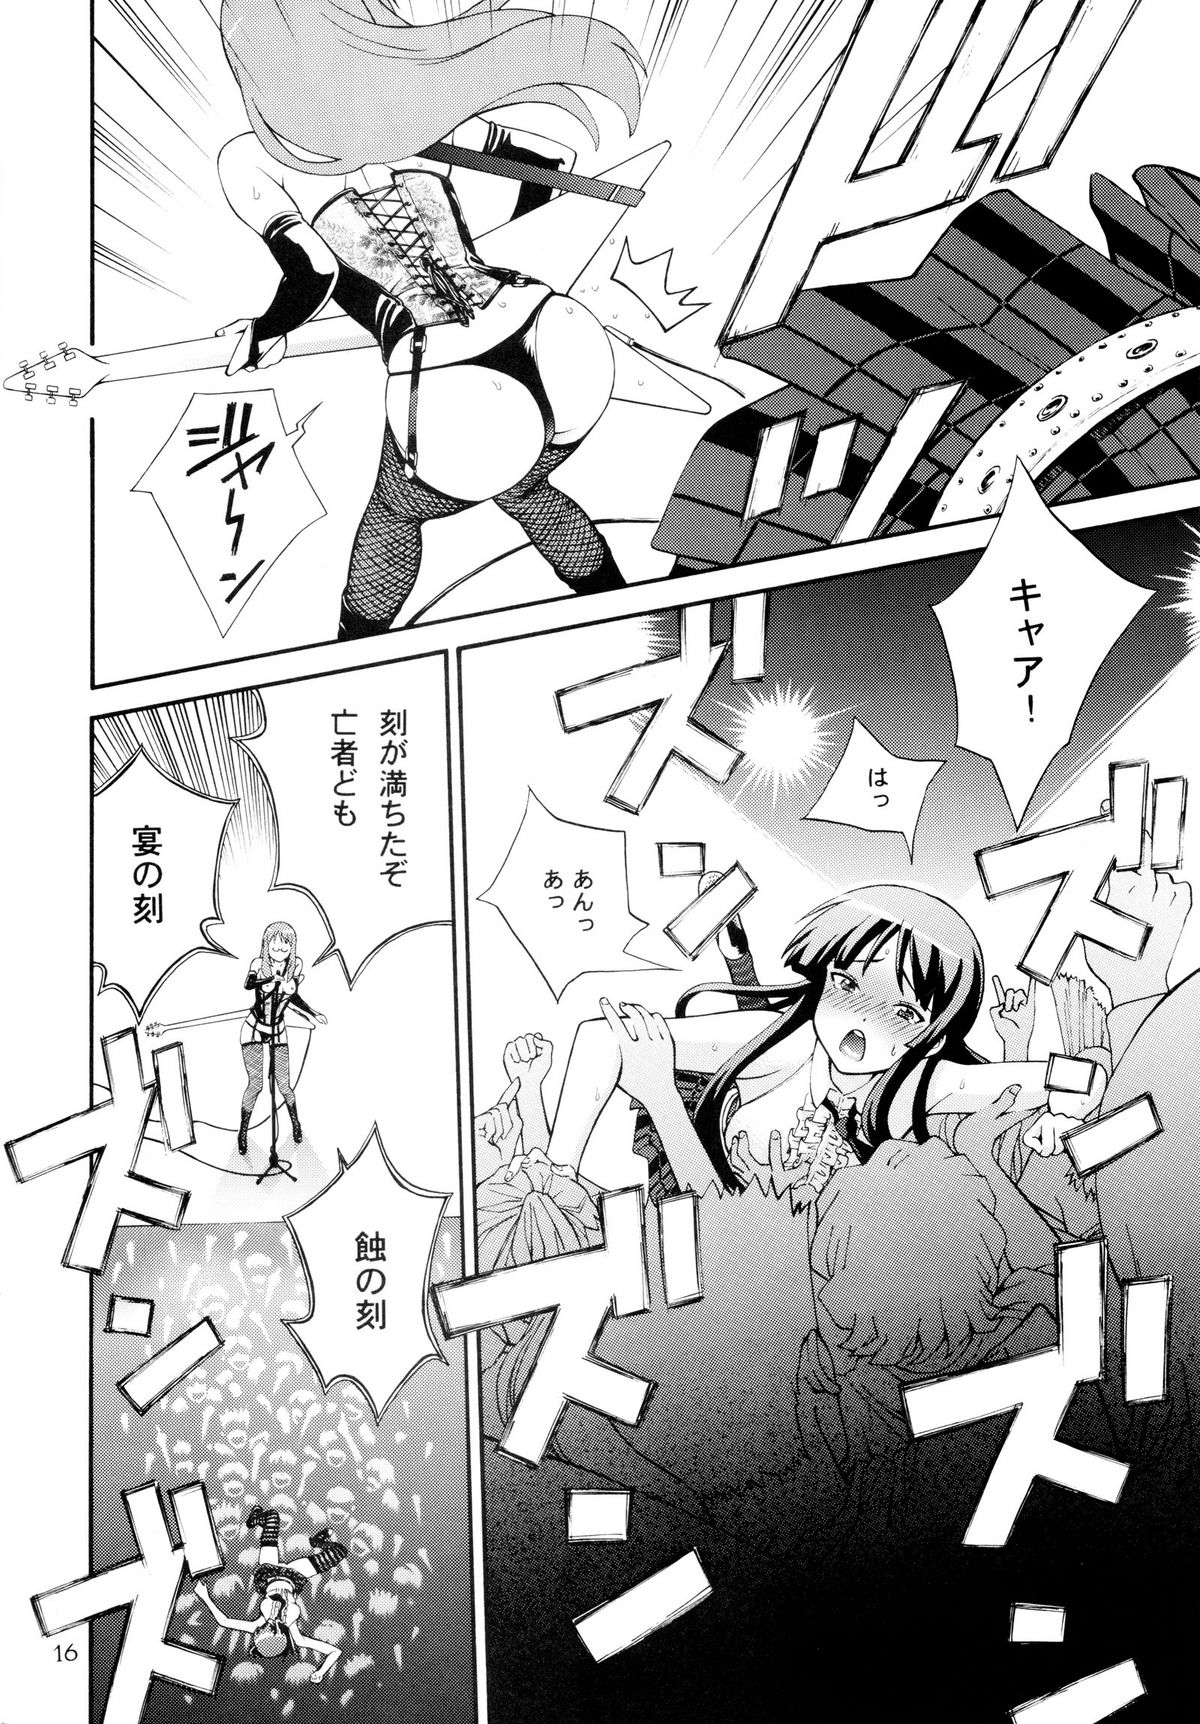 [Dish up (Warabi Yuuzou)] Ge-ON! (K-ON!) page 14 full